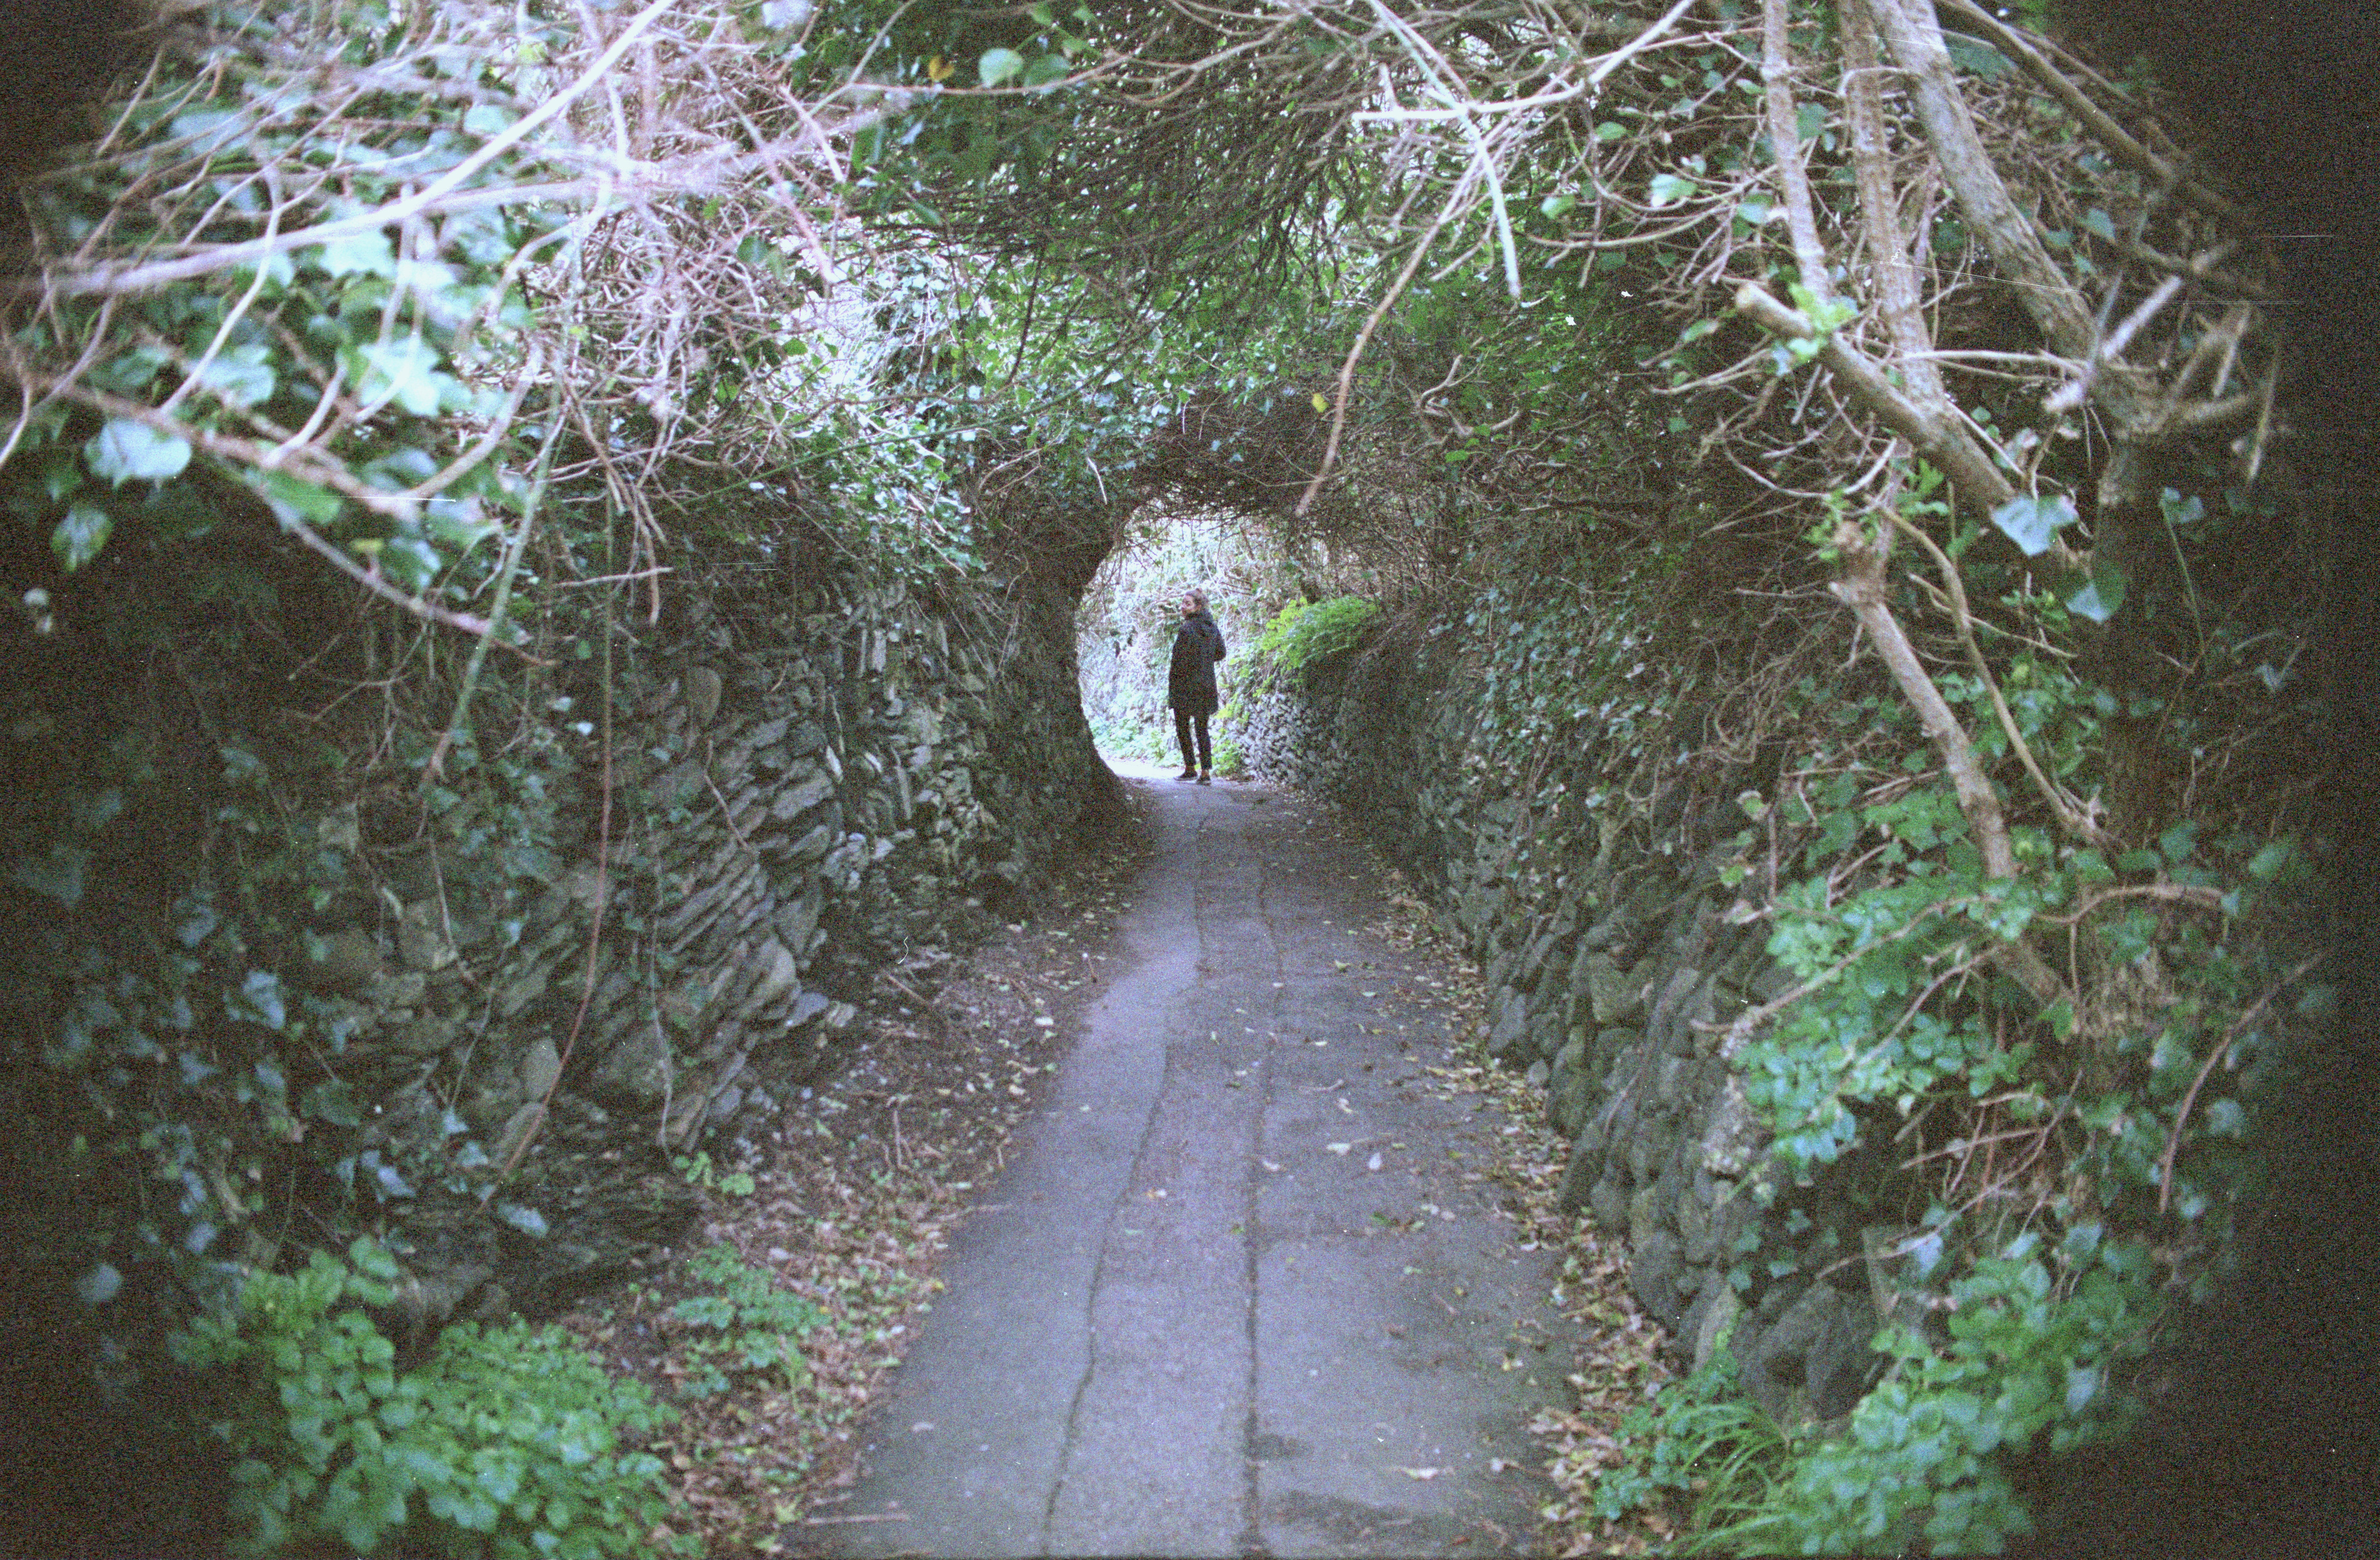 Lindsay walking through a tunnel near York